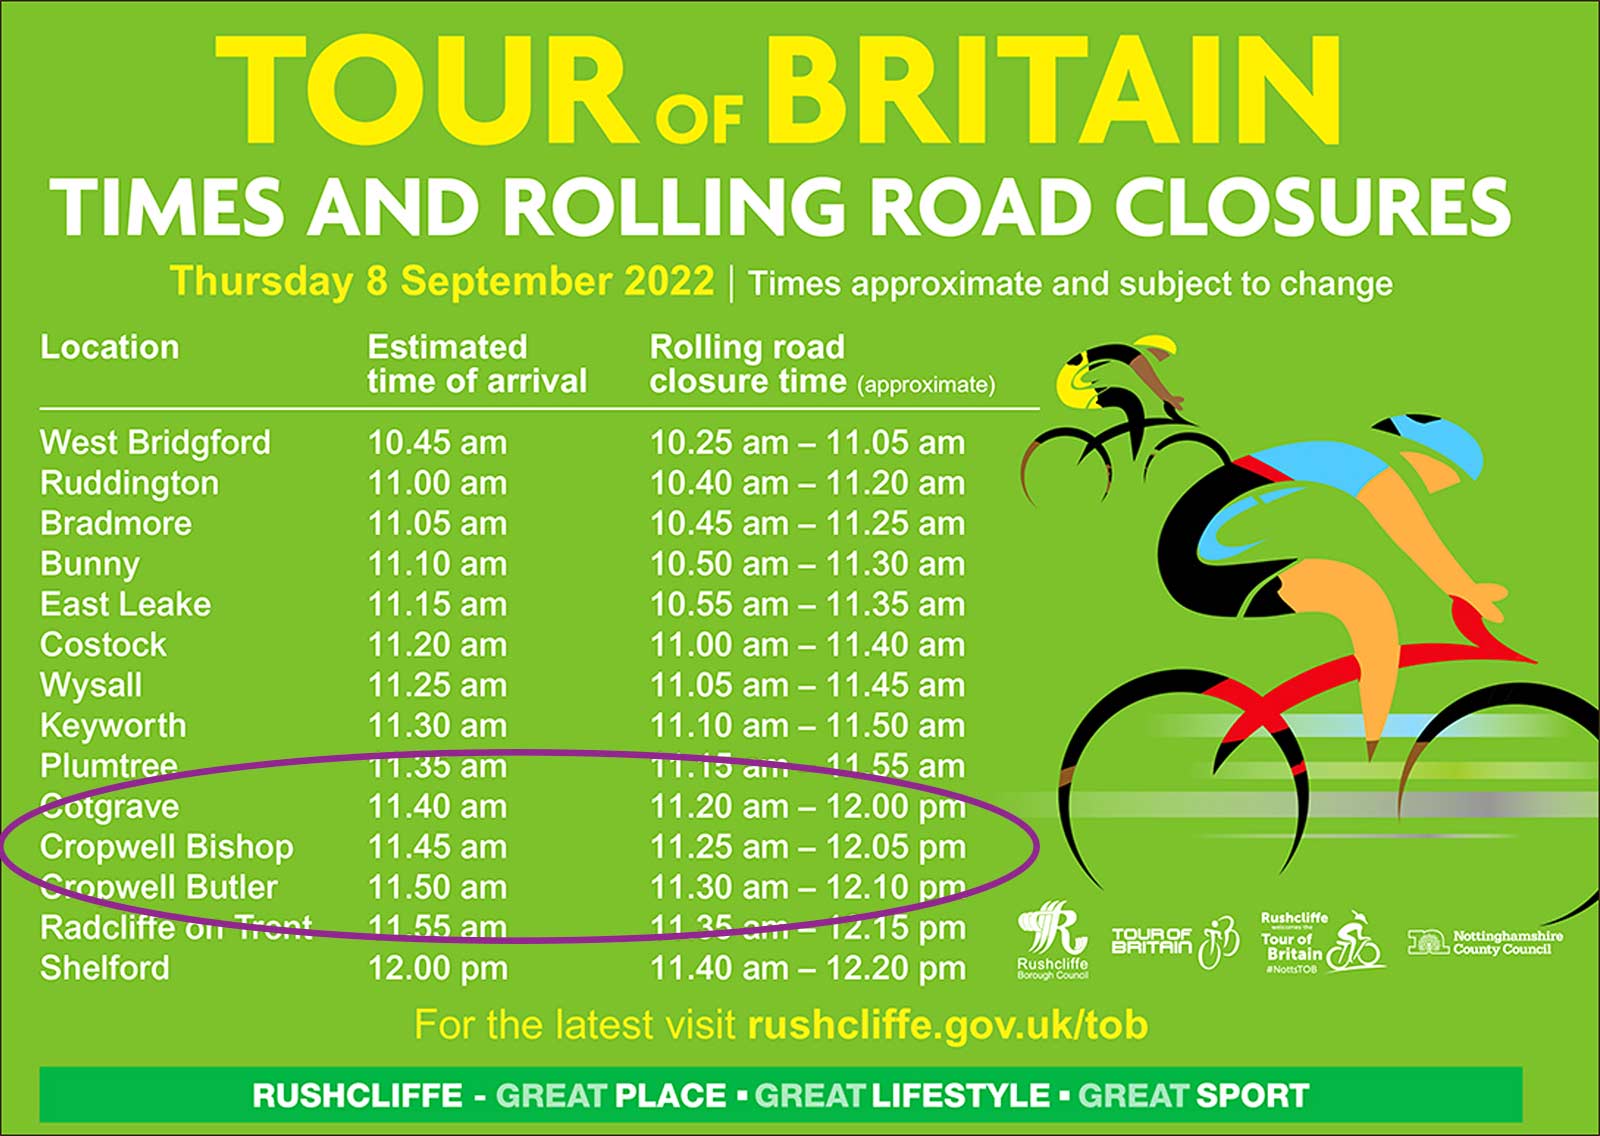 Tour of Britain timings